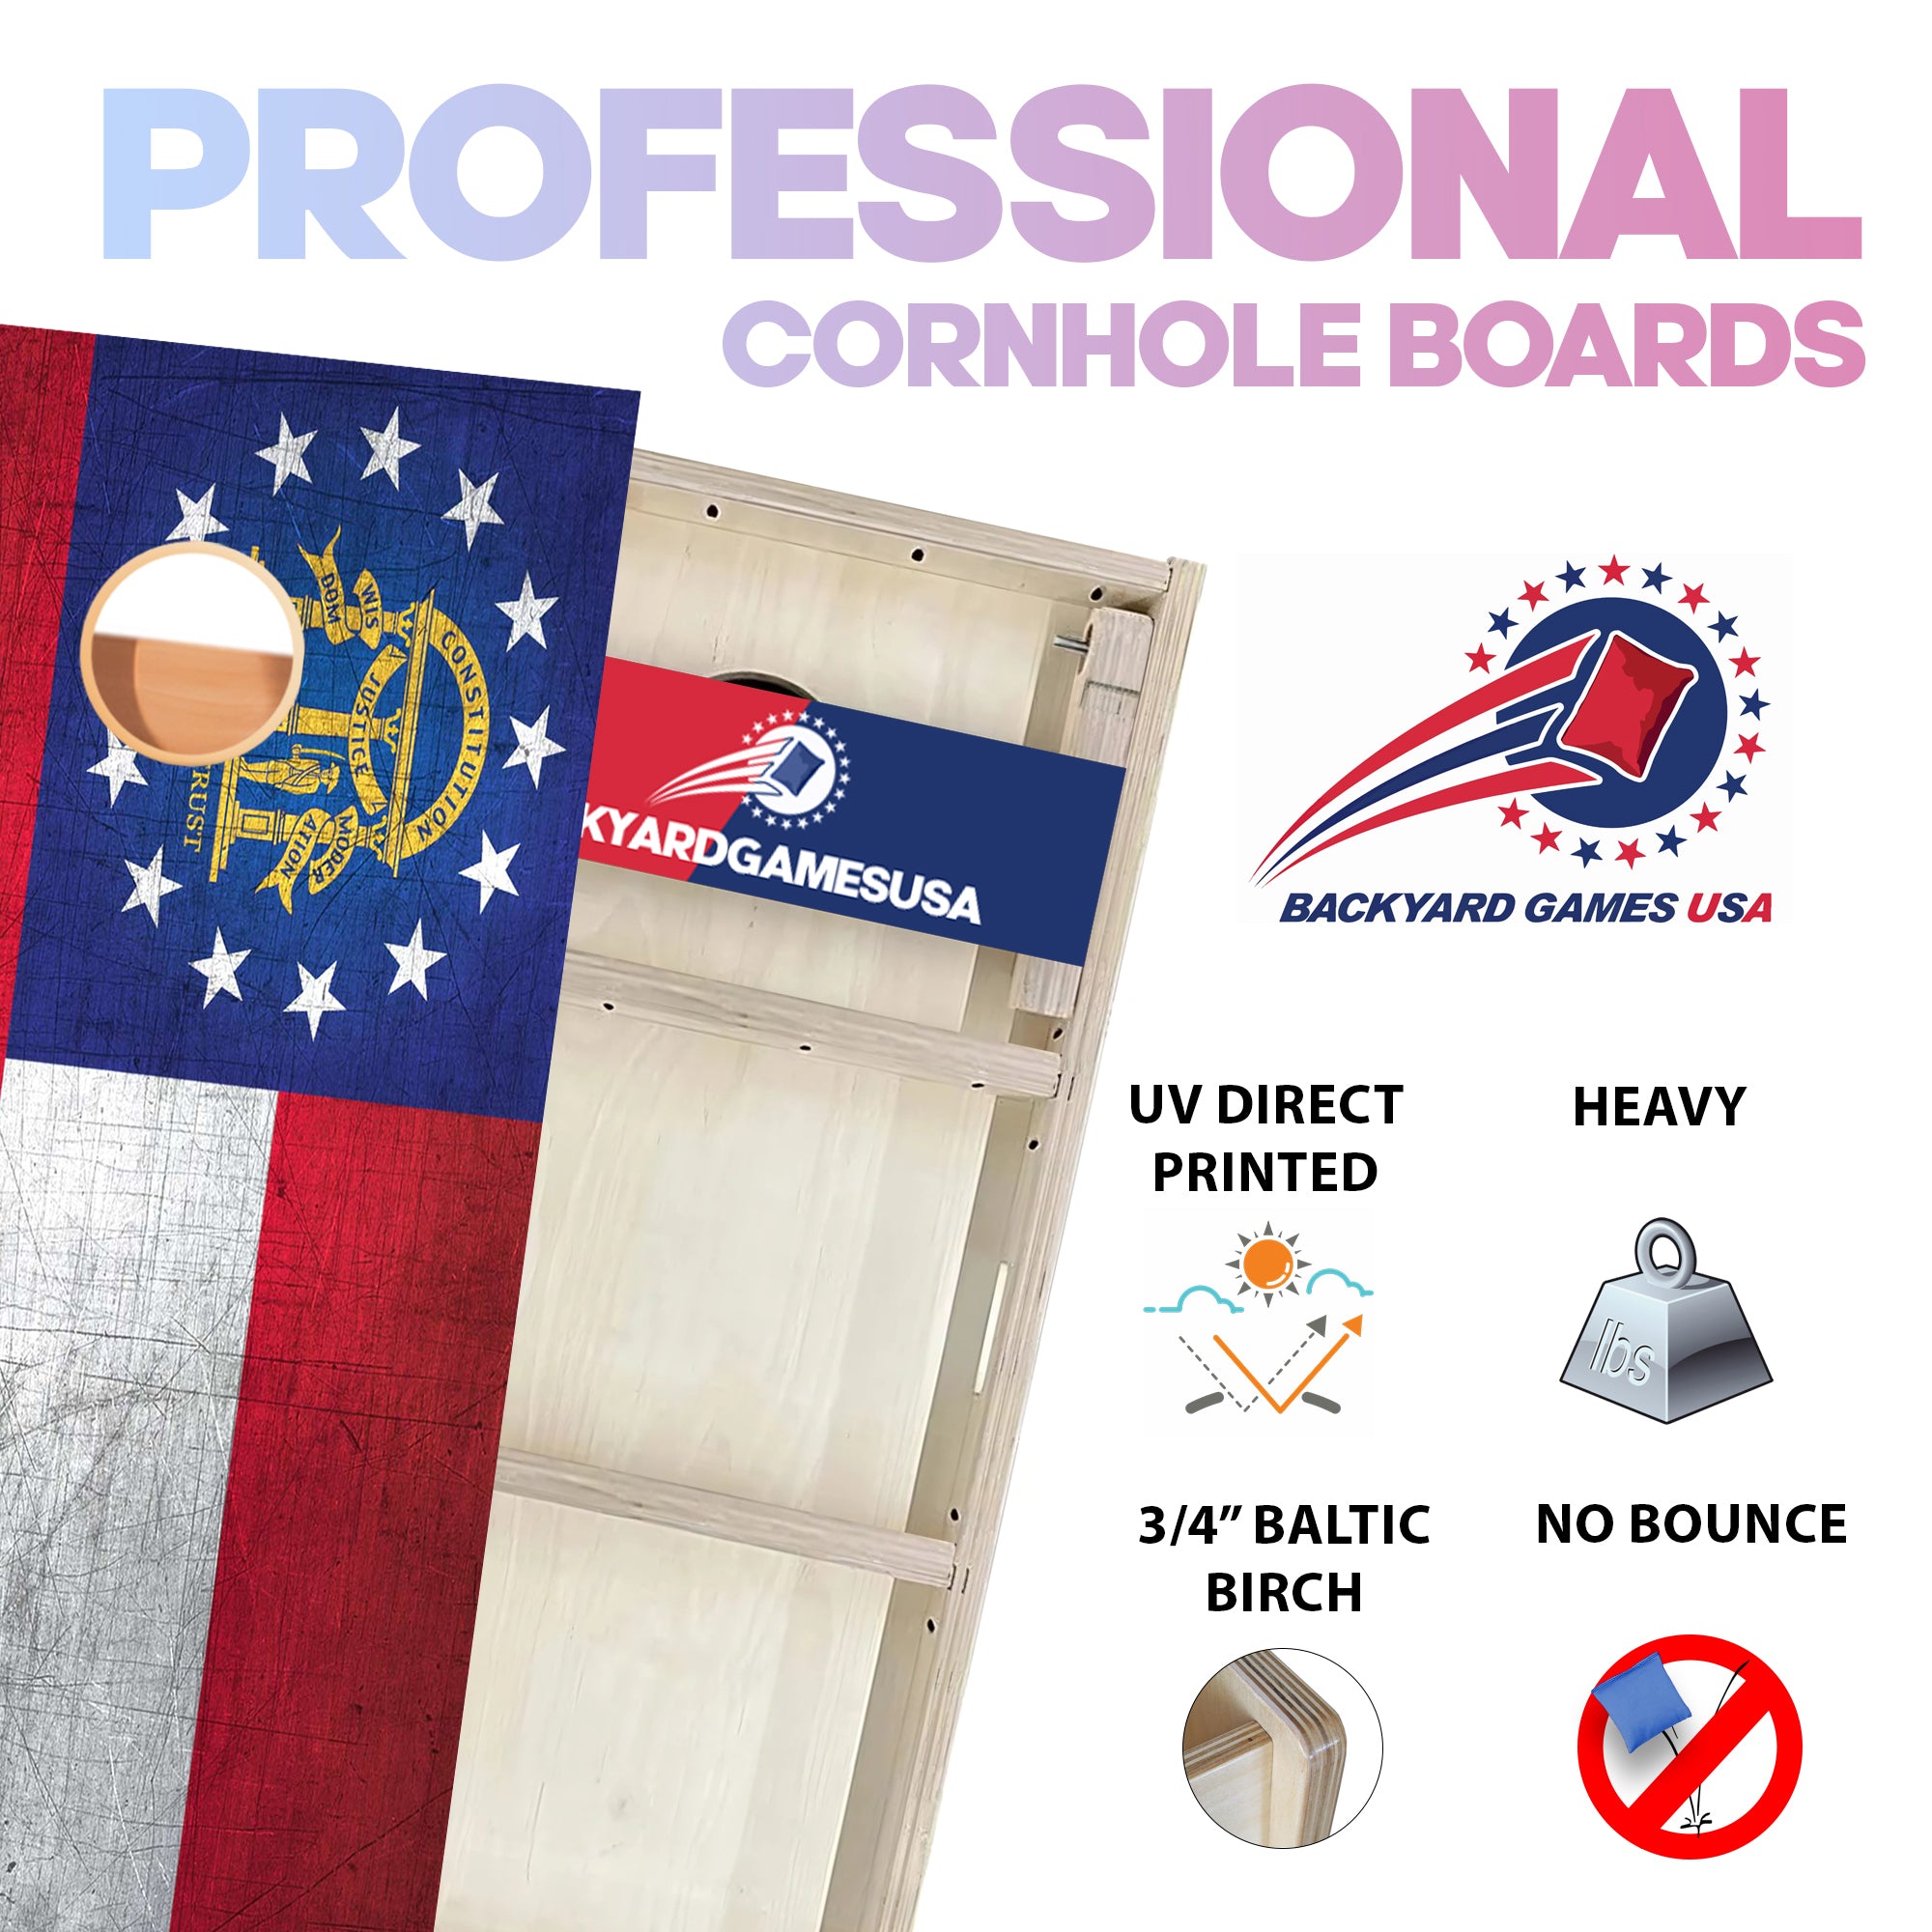 Georgia Professional Cornhole Boards